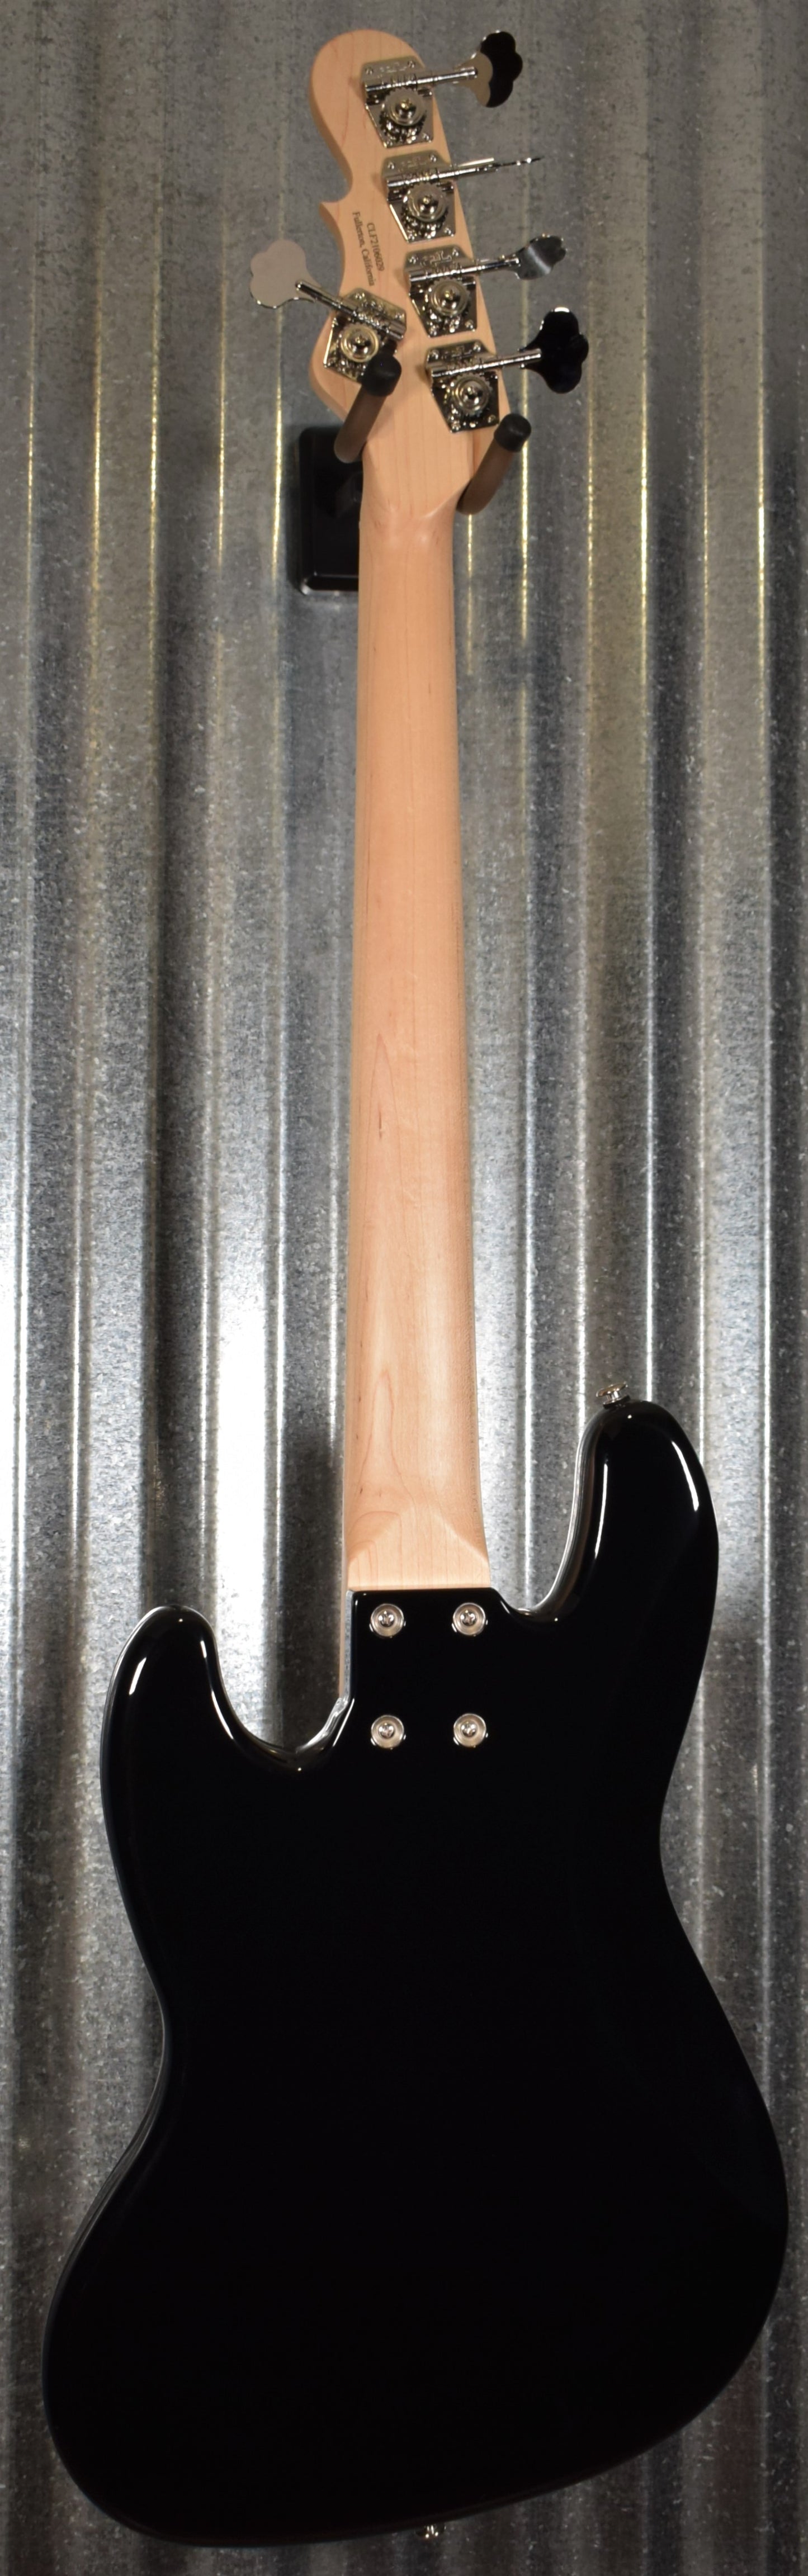 G&L USA JB-5 Jet Black 5 String Jazz Bass Maple Satin Neck & Case #6029